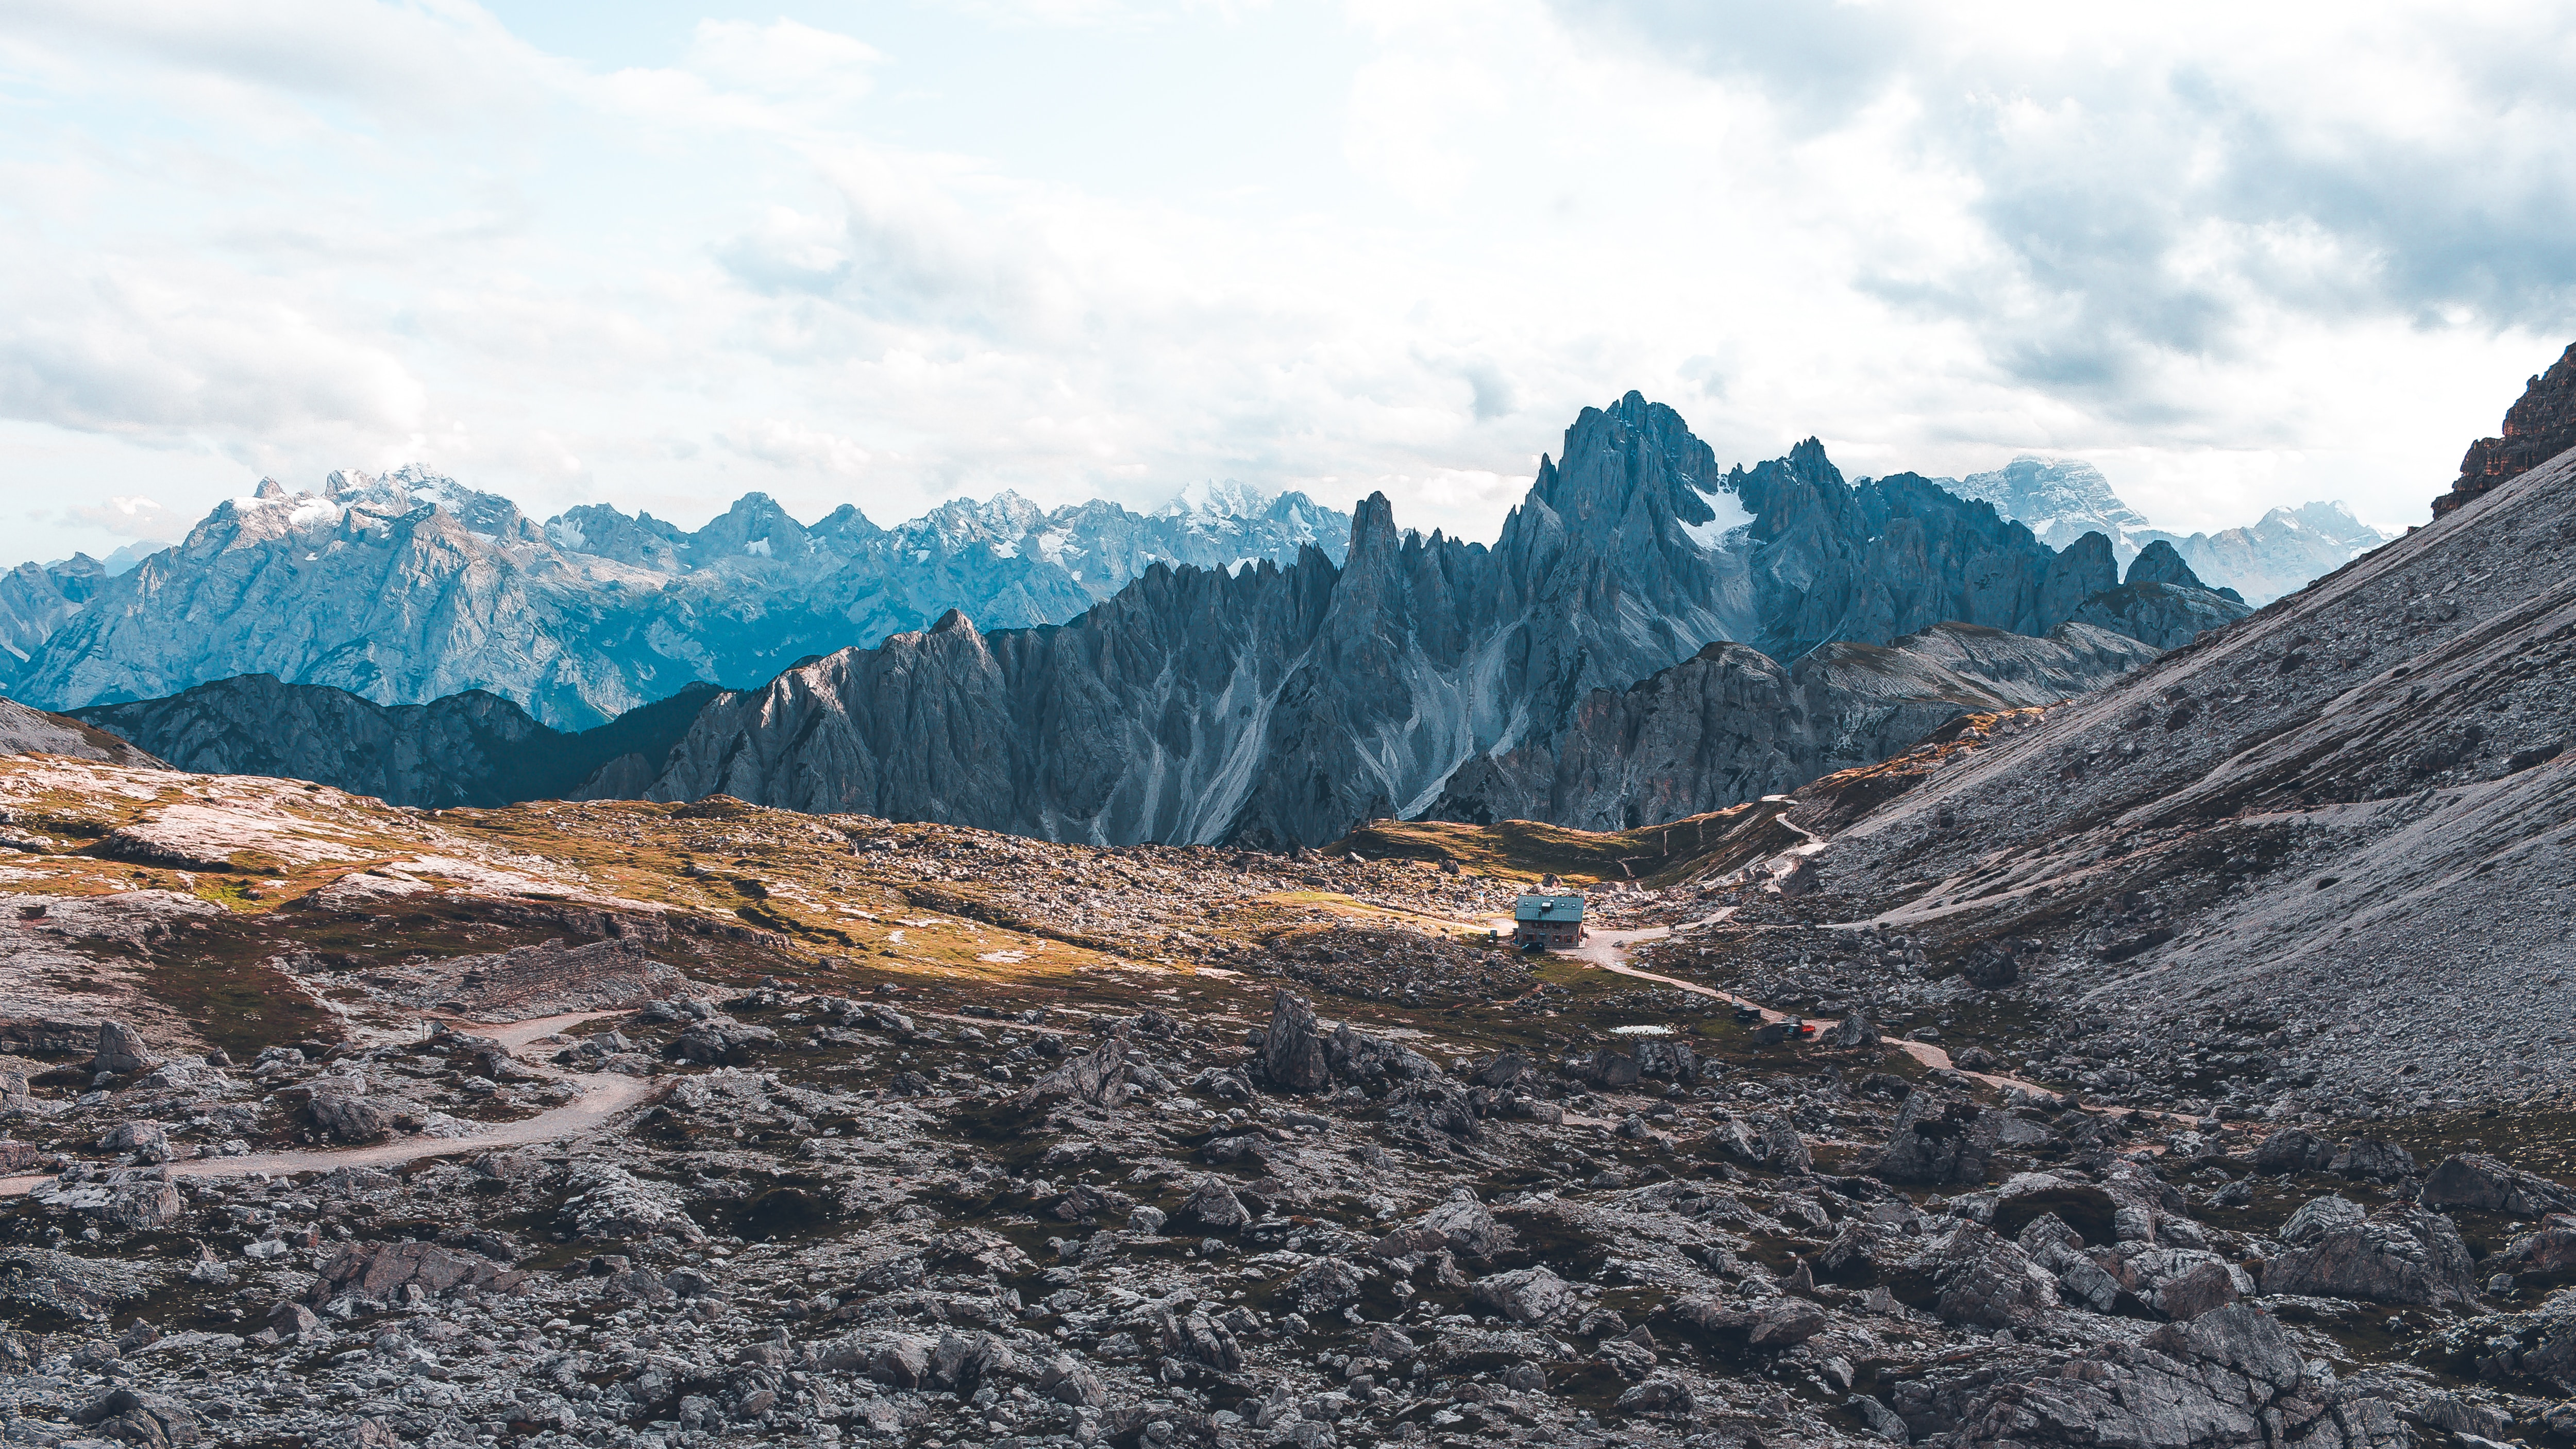 mountains, landscape, nature, building, house, rocky HD for desktop 1080p